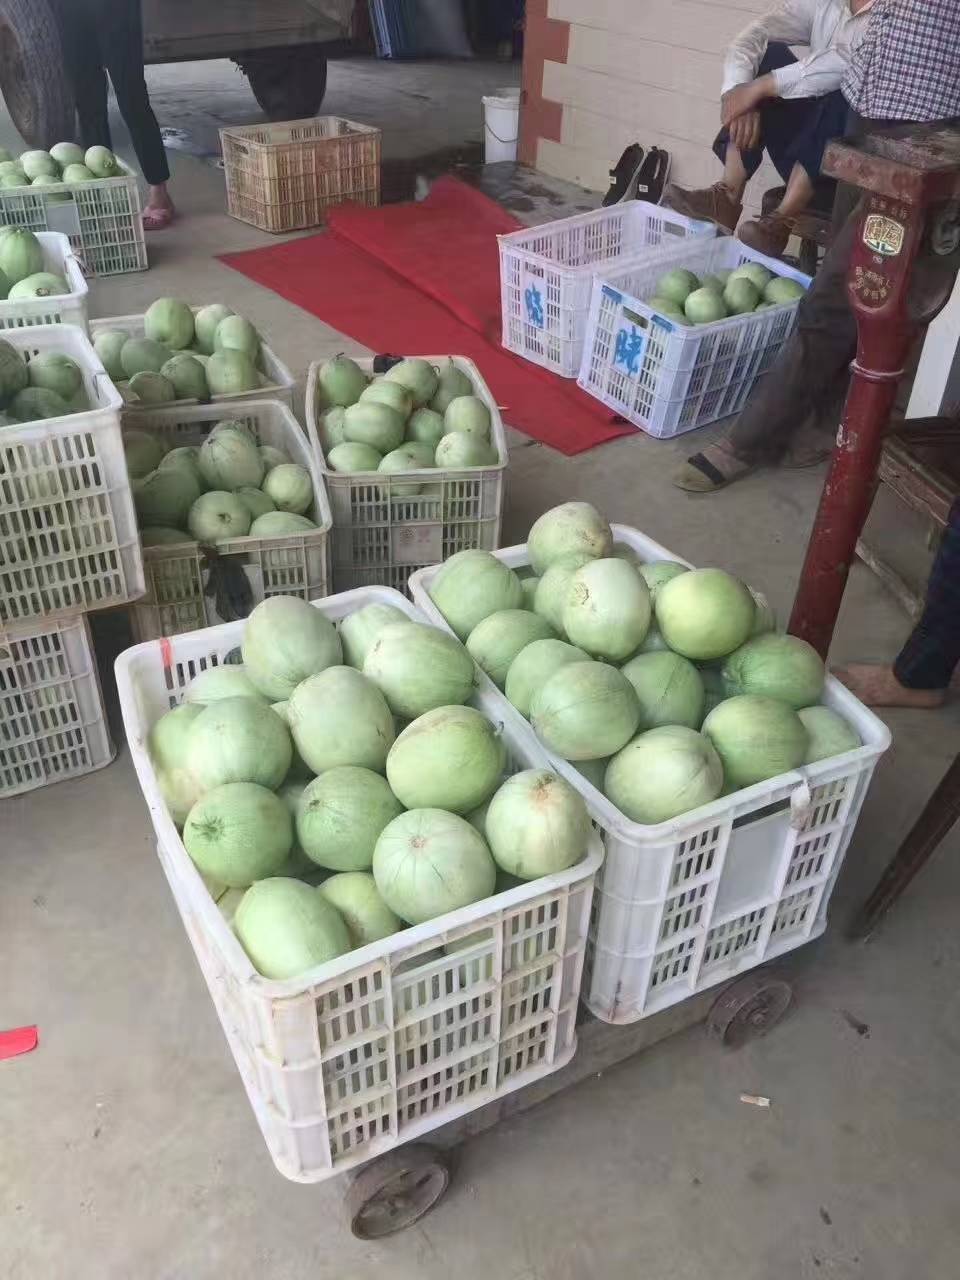 梨瓜.香瓜，个大口感好
糖度14/17
供货量大约一百万斤左右，提供一条龙服务